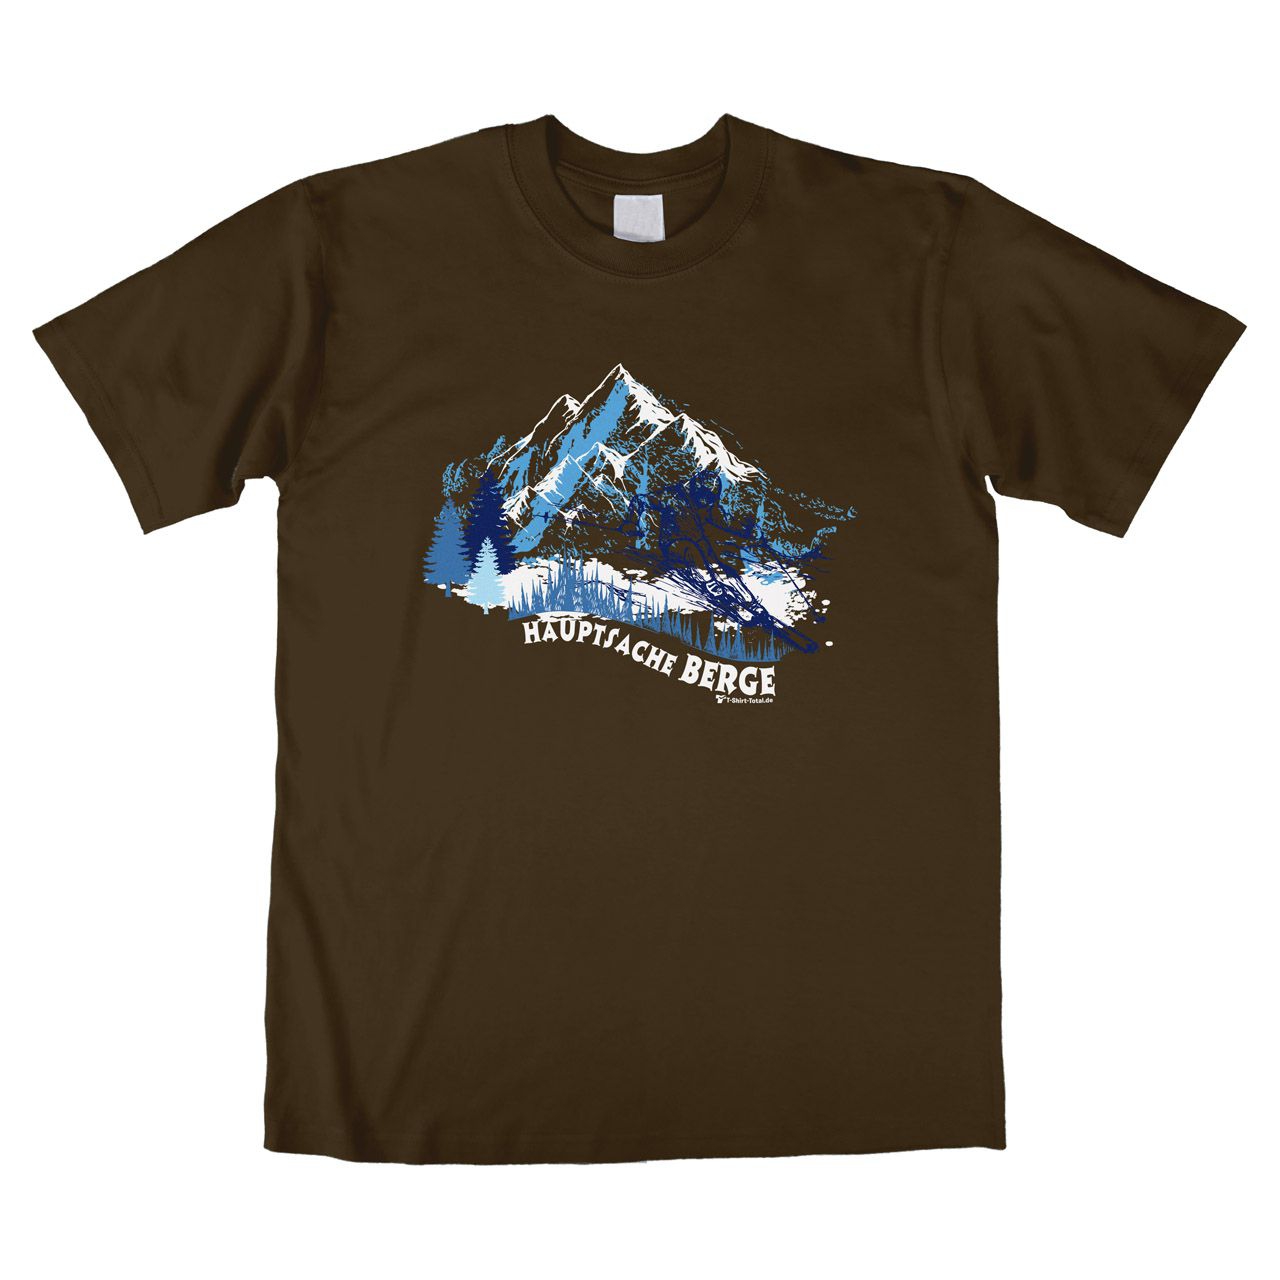 Hauptsache Berge Unisex T-Shirt braun Medium